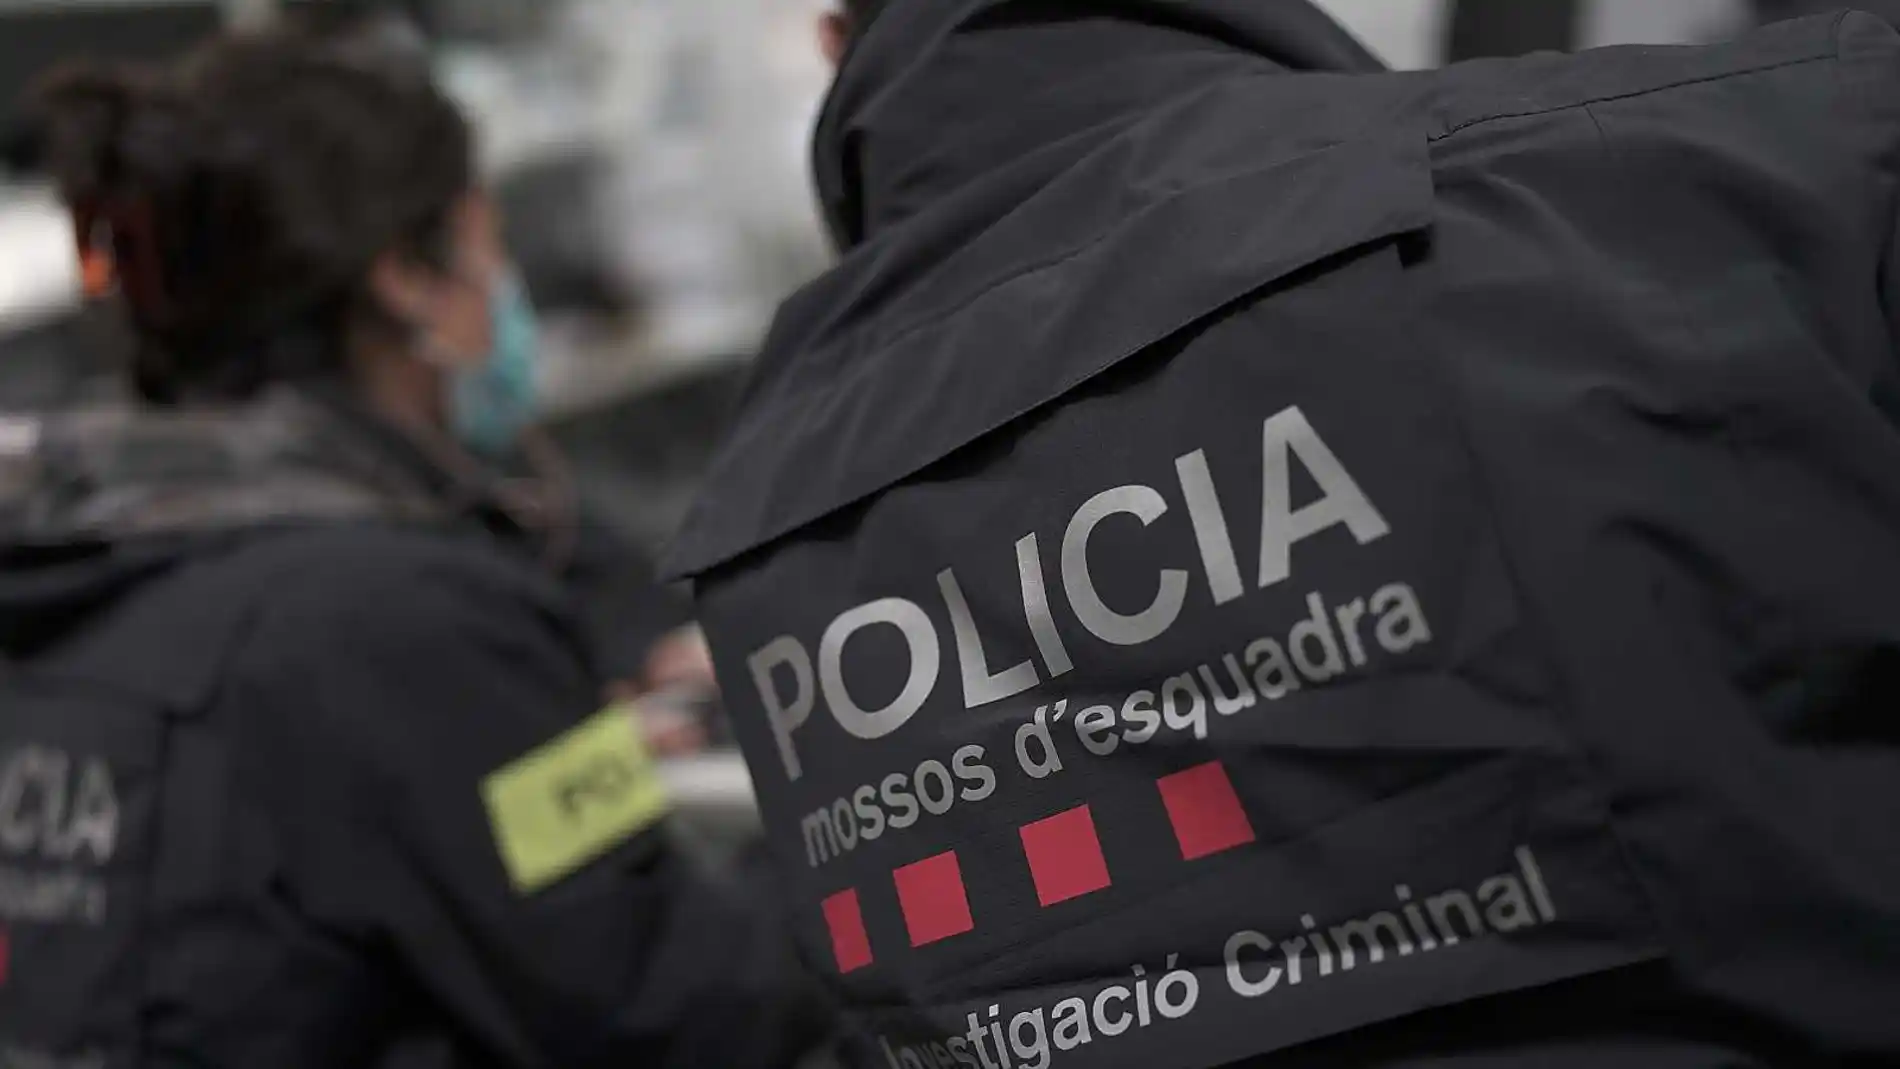 Els Mossos d'Esquadra detenen els dos autors d'un assassinat a un home comès a França l'any 2003 que han viscut a Catalunya amb identitats falses durant els darrers 20 anys